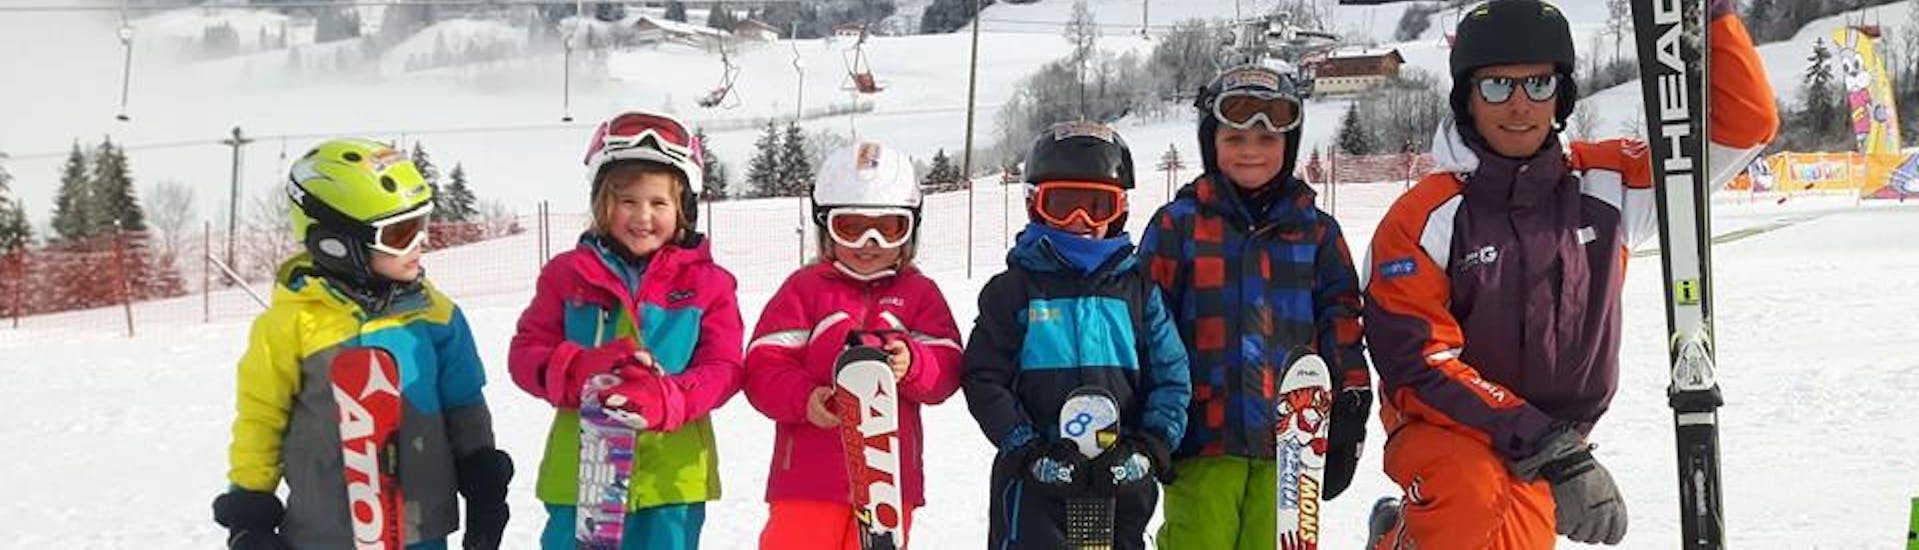 Cours de ski "All-In-One" pour Enfants (4-6 ans) - Tous niveaux avec Ecole de ski Toni Gruber.